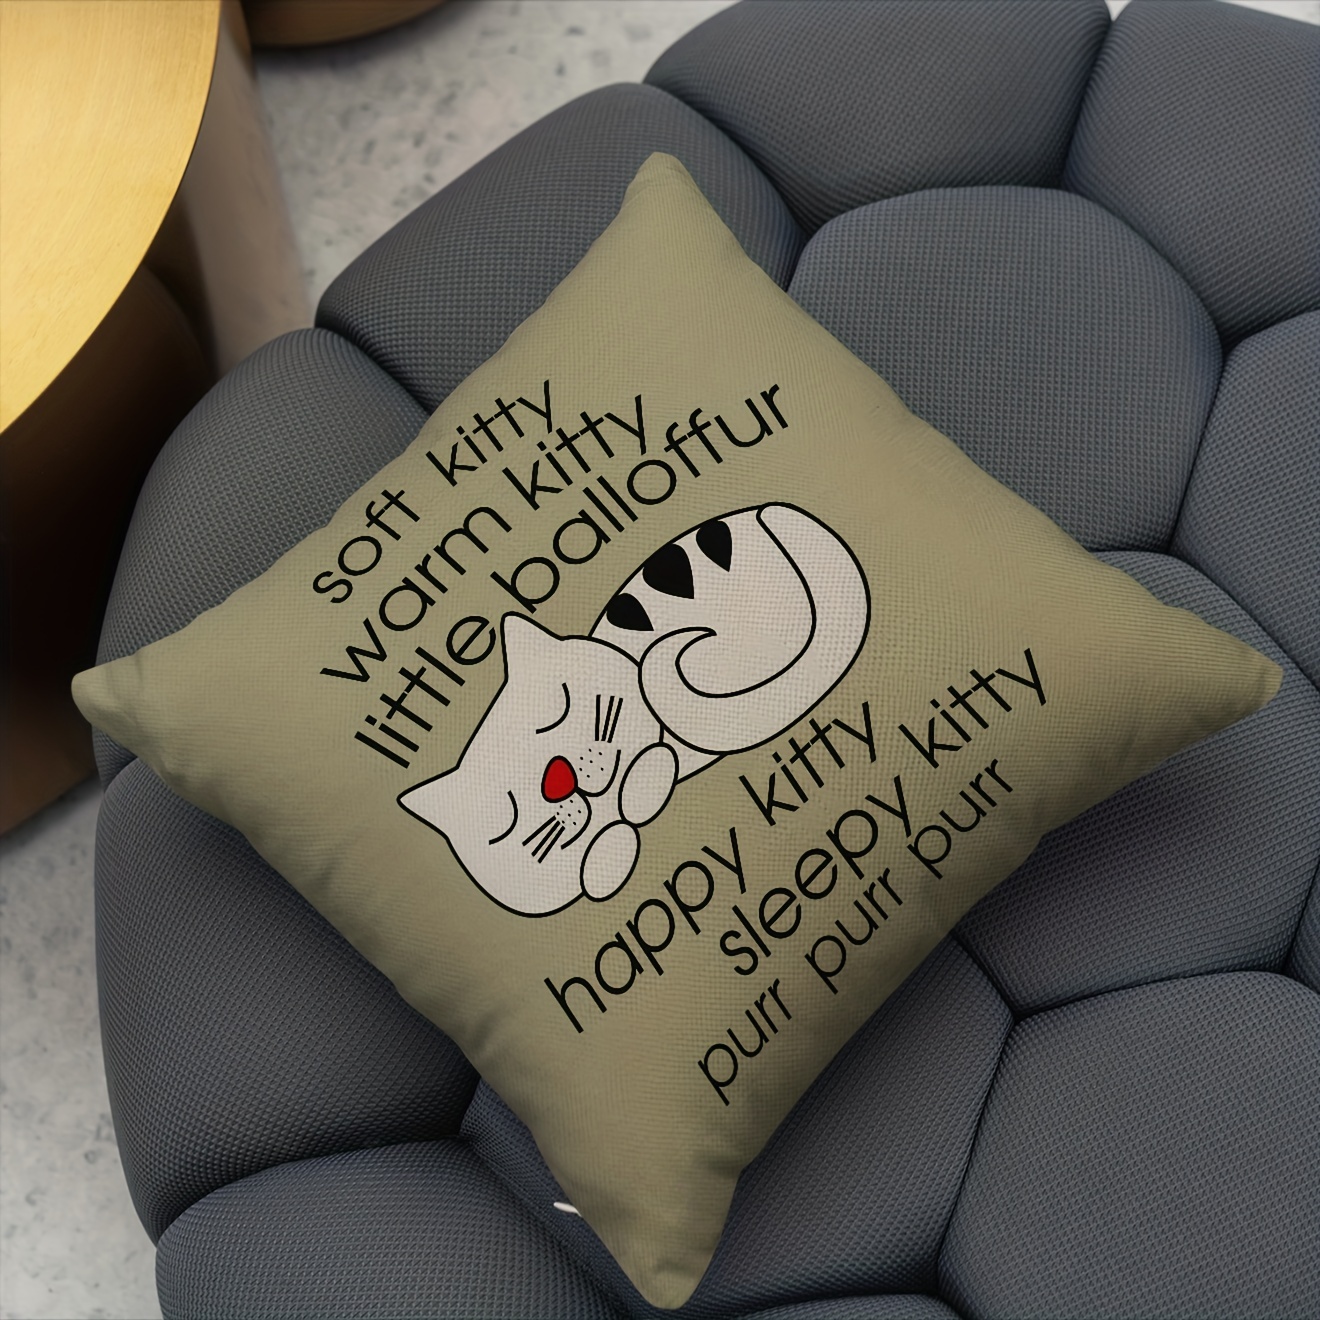 Cushion Cute Decorative Throw Pillows Soft Chair Cushion Bedroom